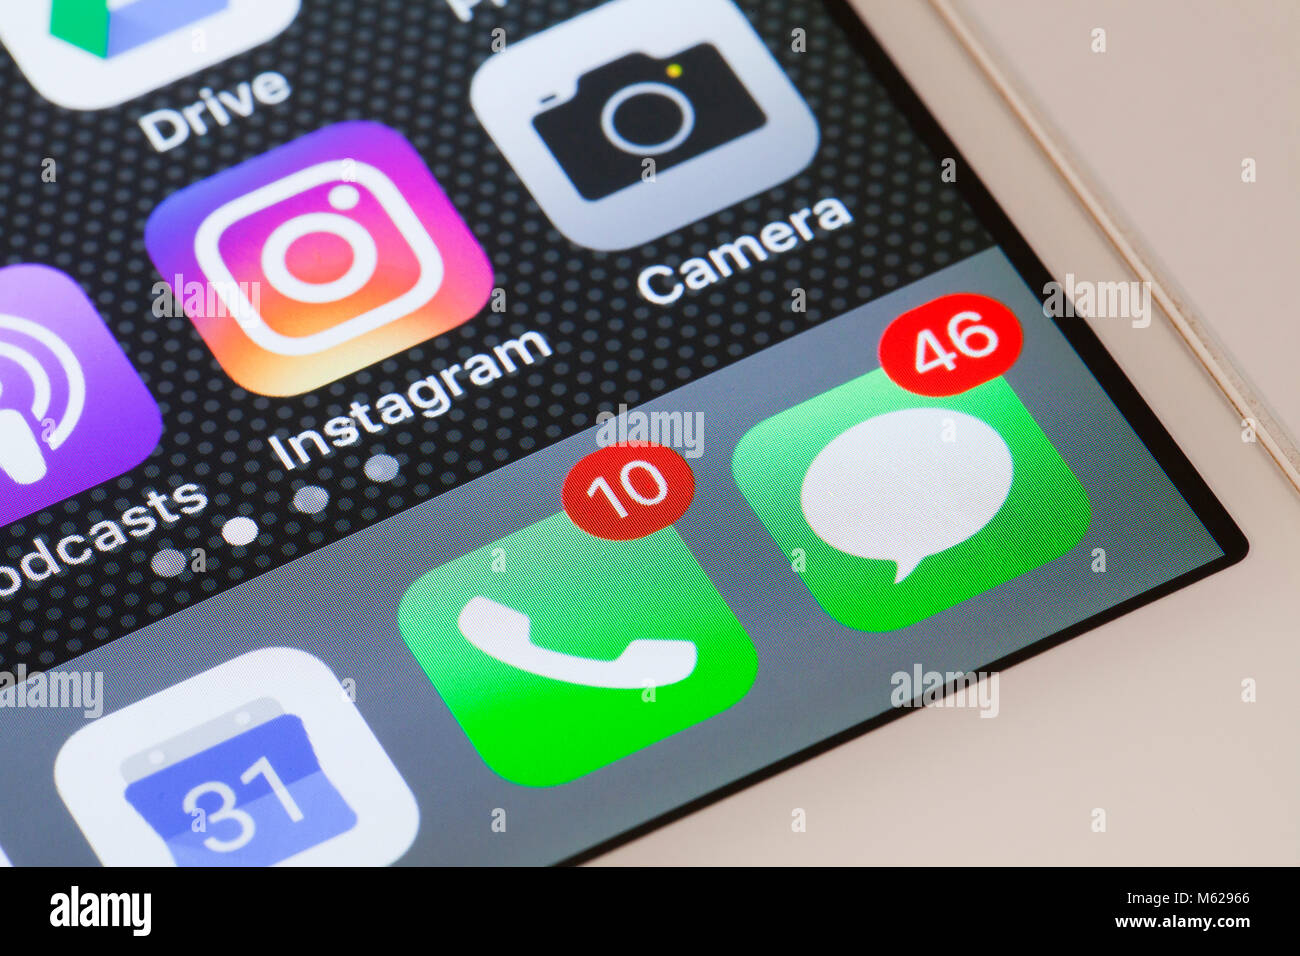 Las insignias de notificación (punto rojo) muestra el alto número de llamadas perdidas y mensajes de texto en el iPhone 5s pantalla de inicio - EE.UU. Foto de stock